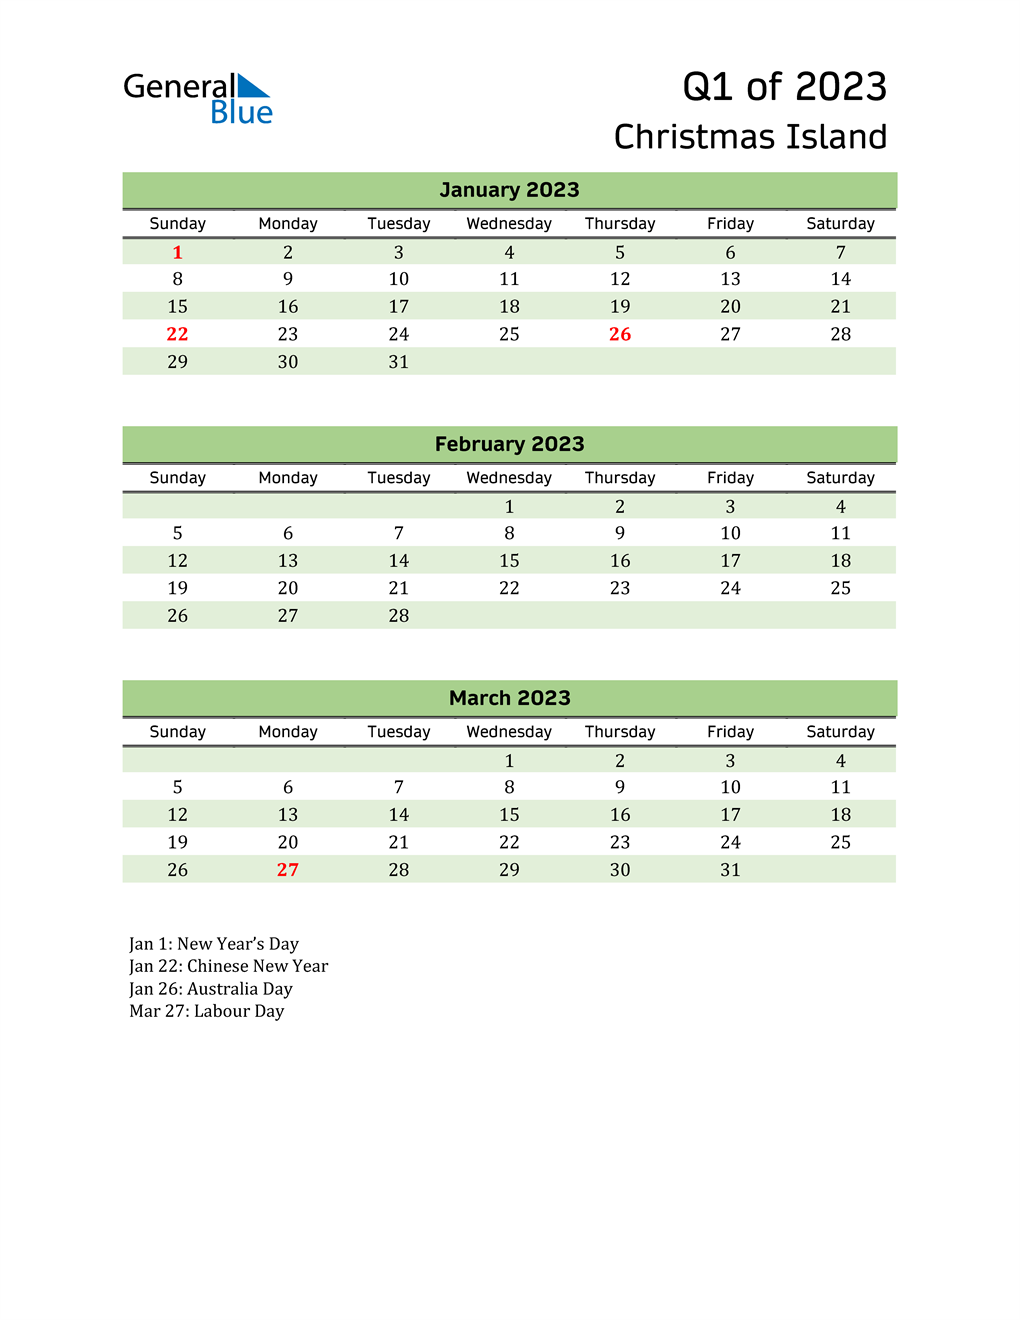  Quarterly Calendar 2023 with Christmas Island Holidays 